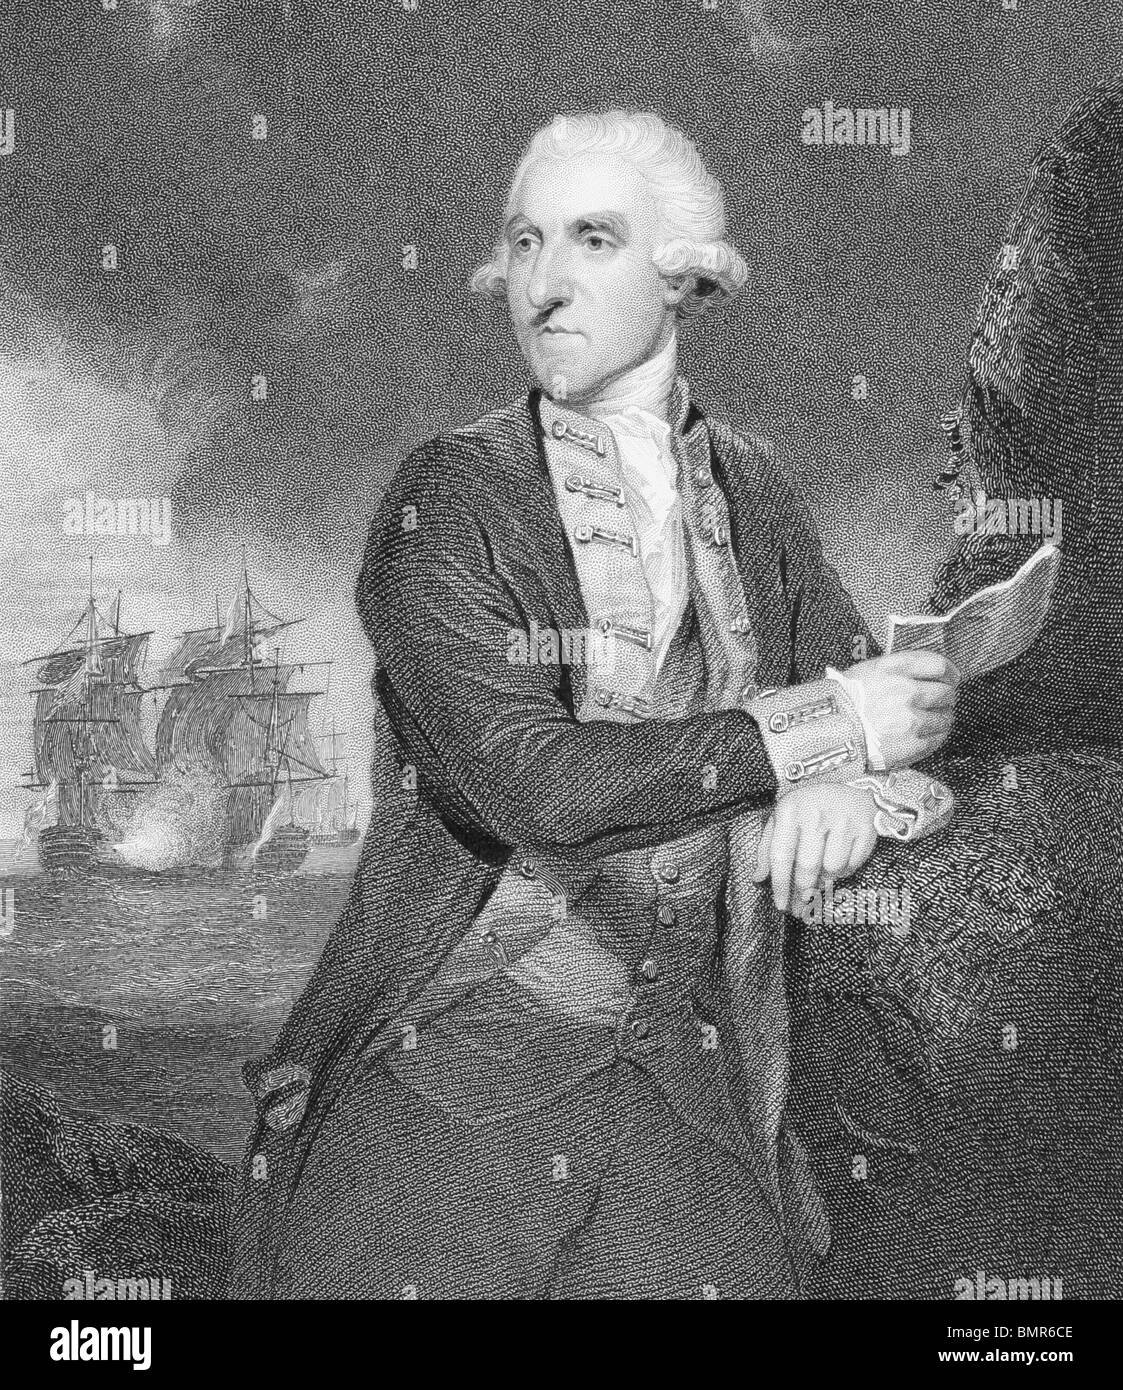 Admiral Samuel Hood, 1. Viscount Hood (1724 – 1816) auf Gravur aus den 1800er Jahren. Britischer Admiral. Stockfoto